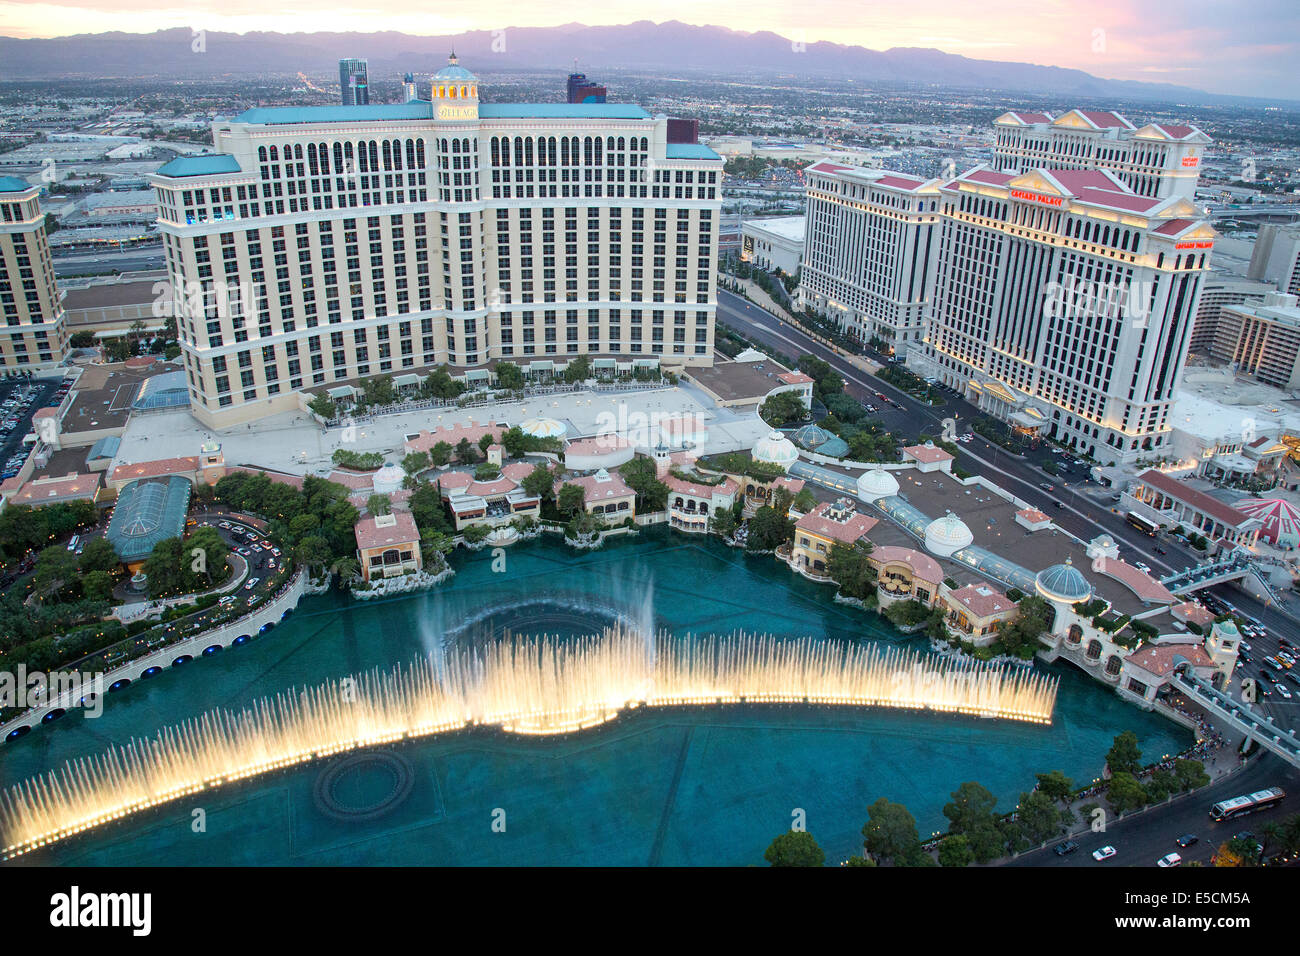 El Bellagio Hotel de lujo, casino, y fuentes en Las Vegas Strip en Paradise, Nevada. Foto de stock